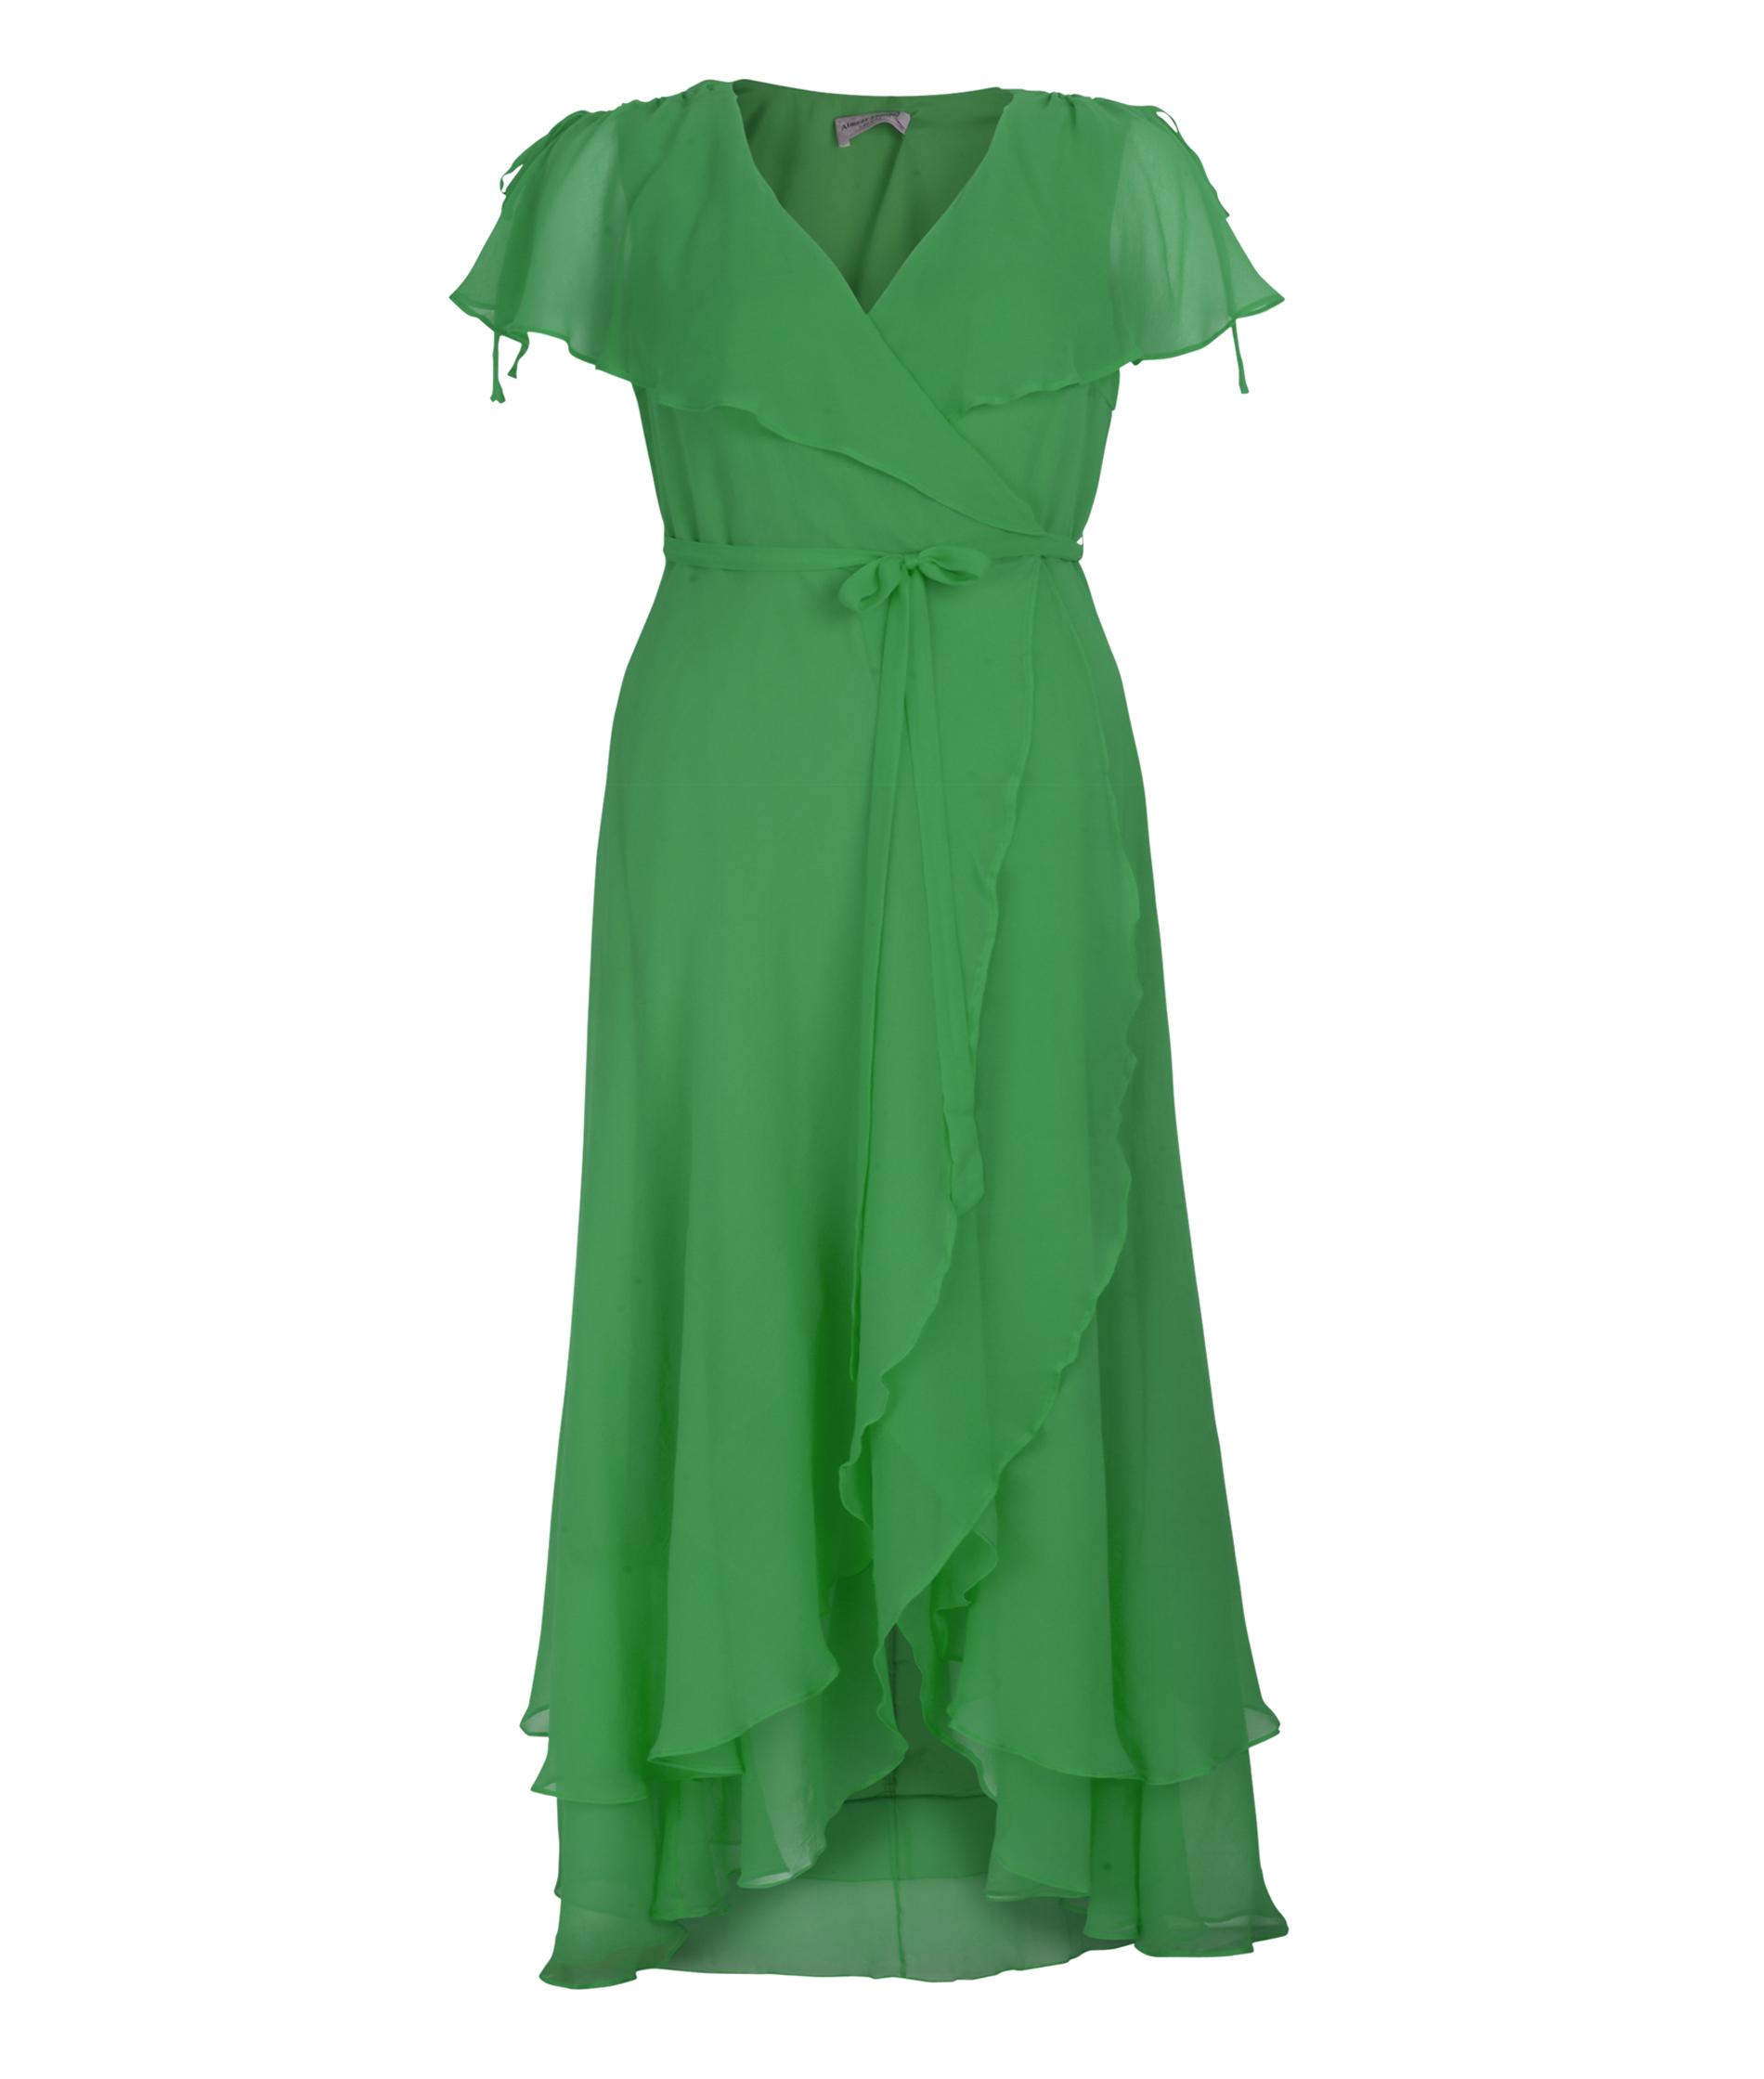 green vintage dresses